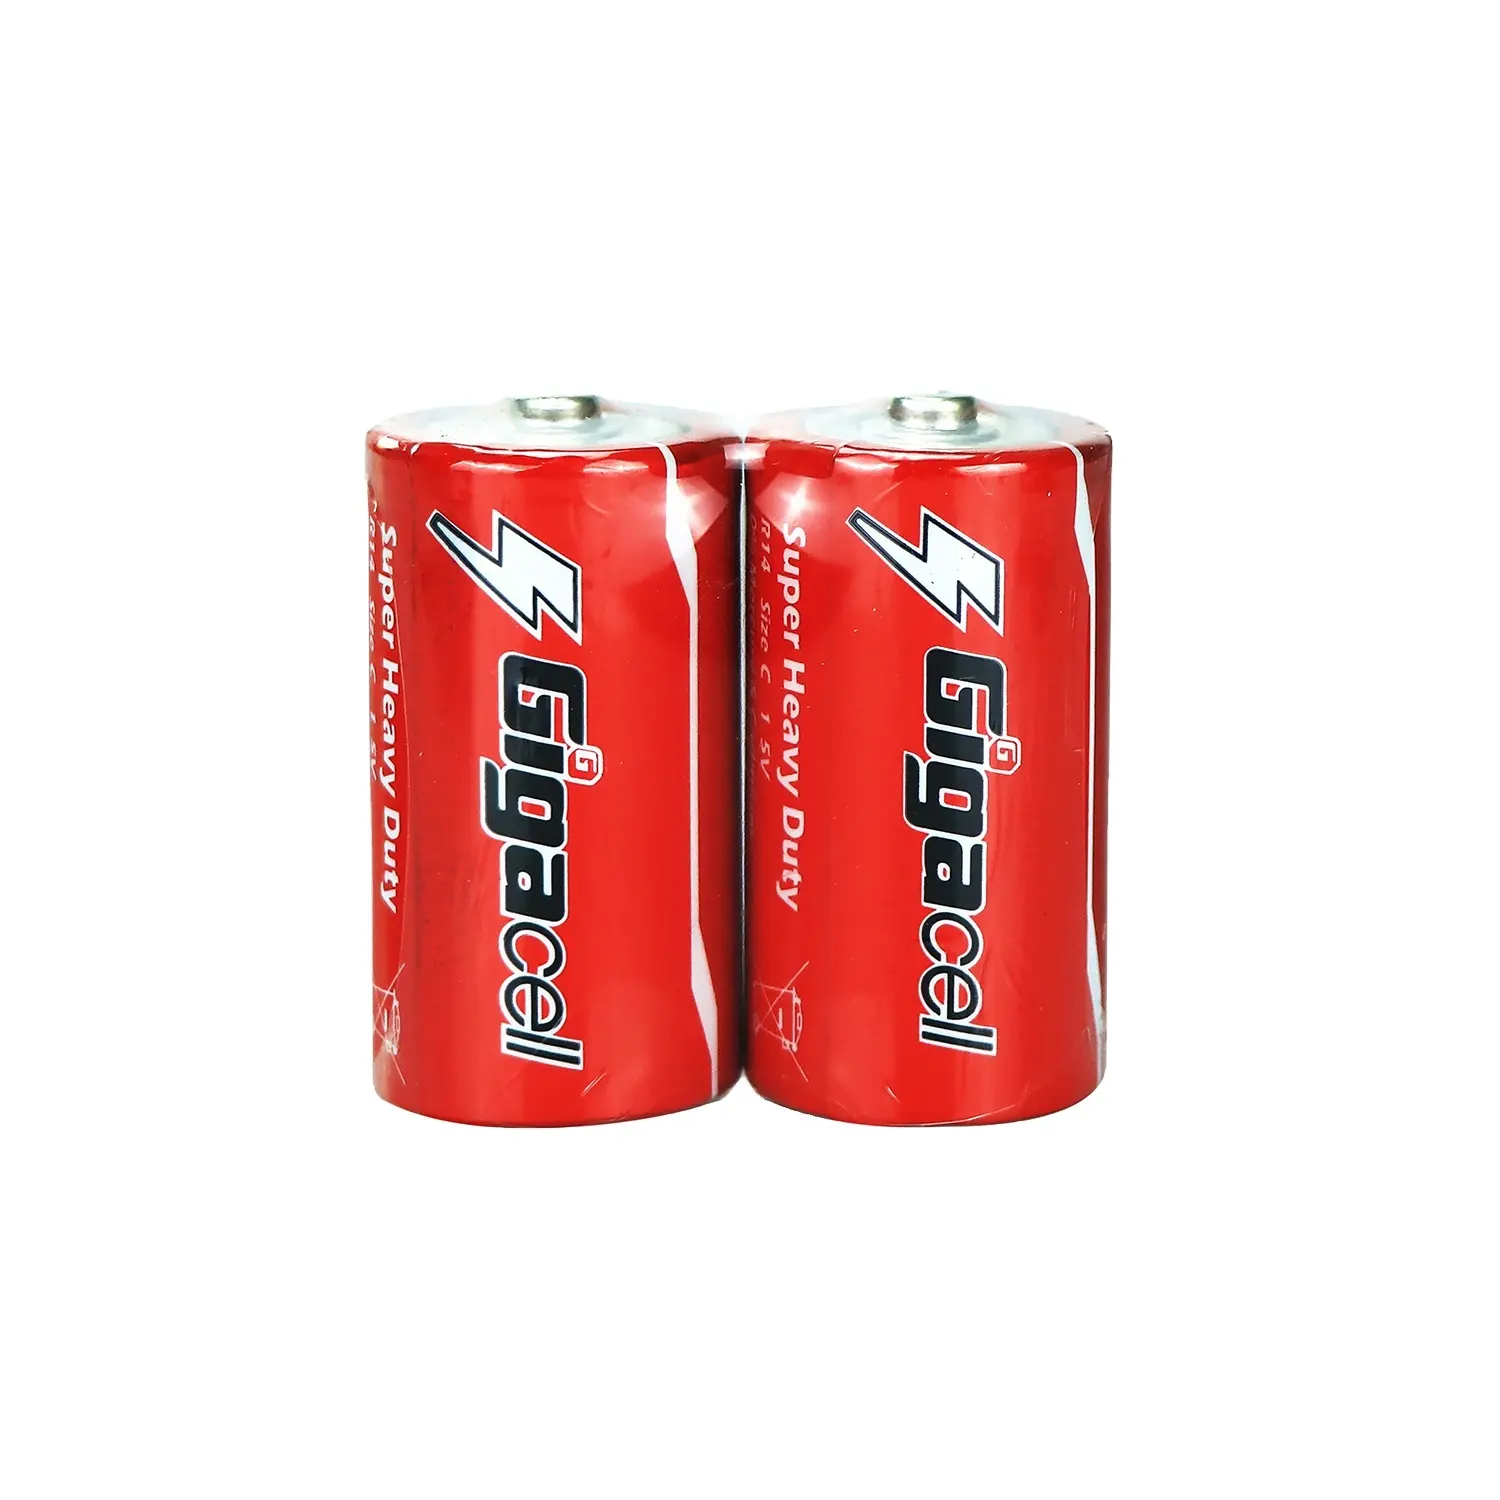 R14 bateria tamanho c/bateria de carbono/super resistente